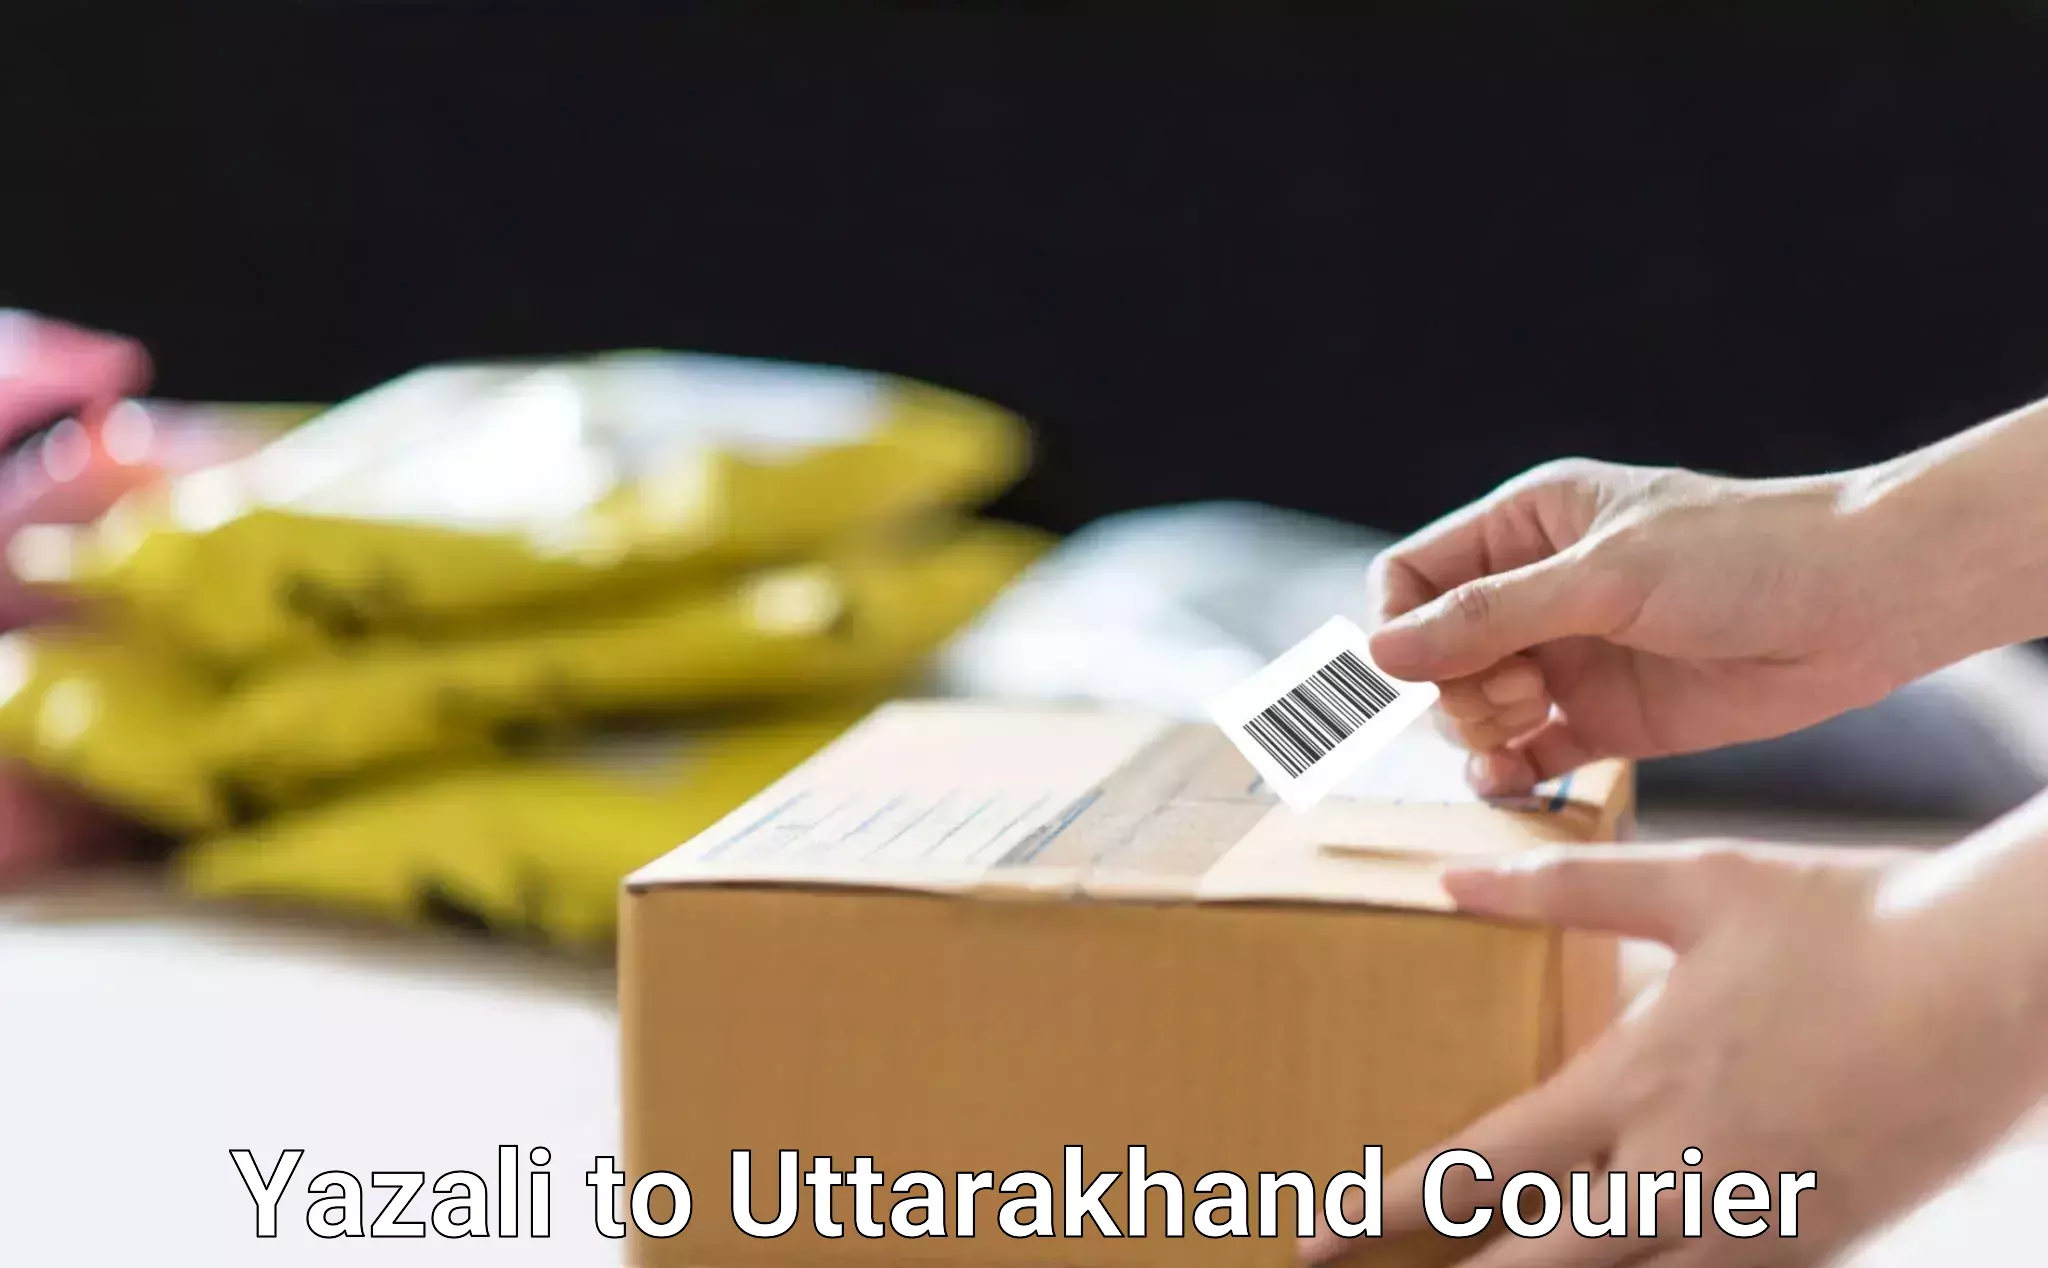 Urban courier service Yazali to Srinagar Pauri Garhwal